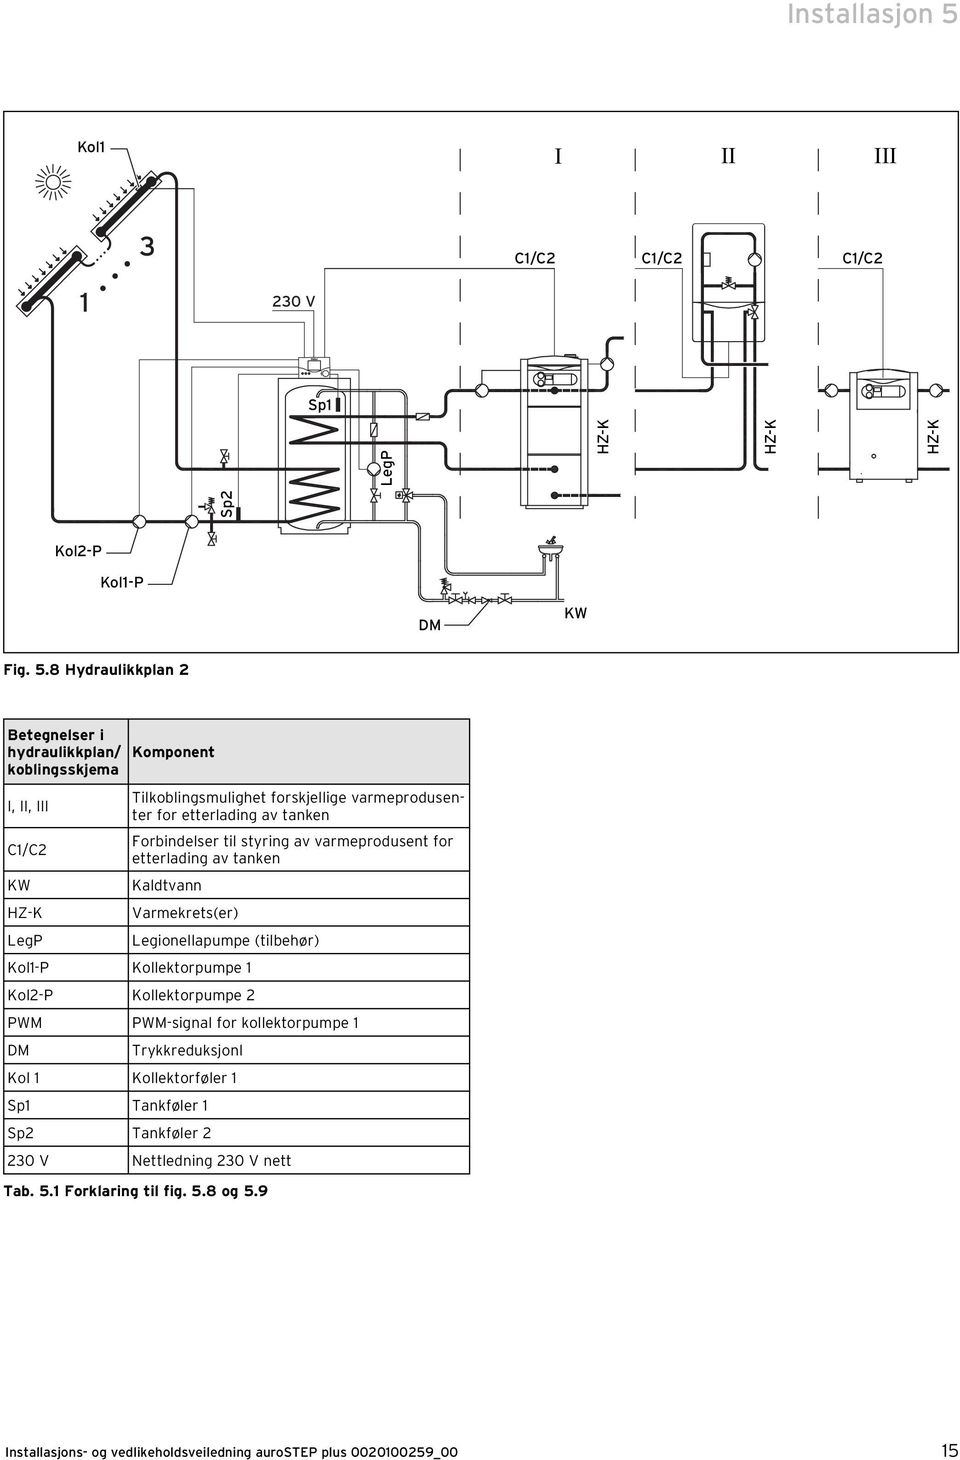 8 Hydraulikkplan 2 Betegnelser i hydraulikkplan/ koblingsskjema I, II, III Komponent Tilkoblingsmulighet forskjellige varmeprodusenter for etterlading av tanken C1/C2